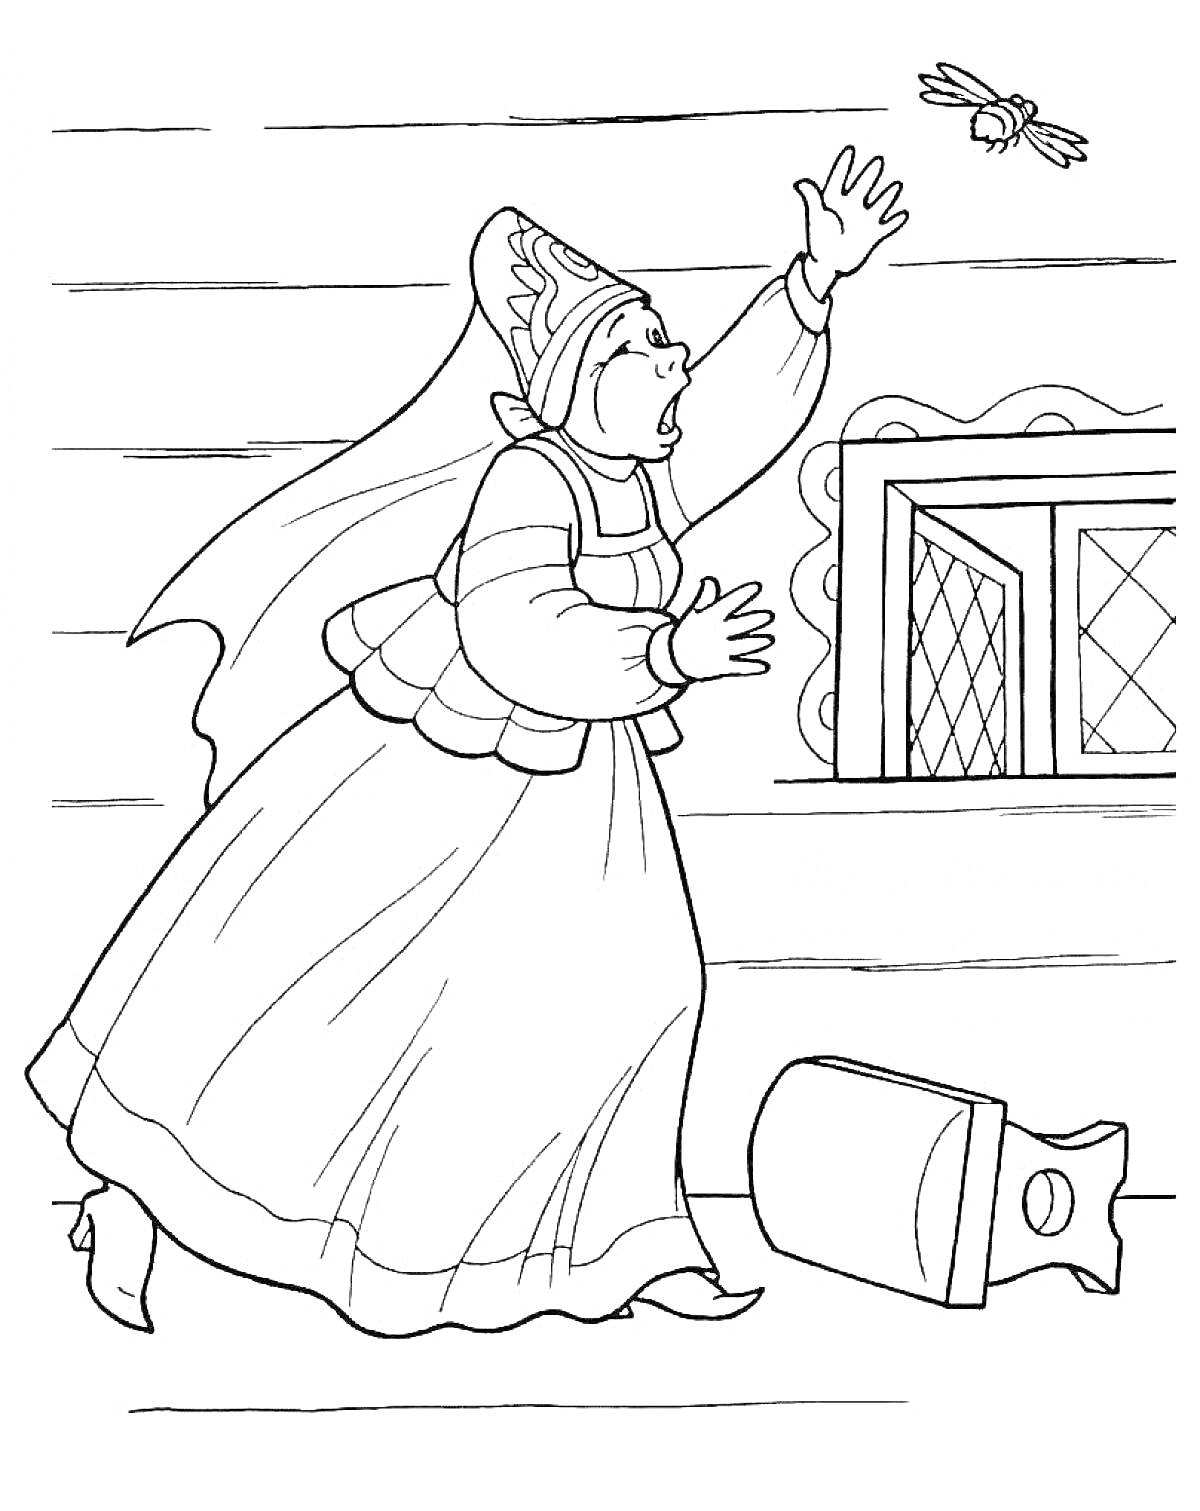 Раскраска Женщина в традиционной одежде поднимает руку к летящей пчеле около окна, валяется мешок